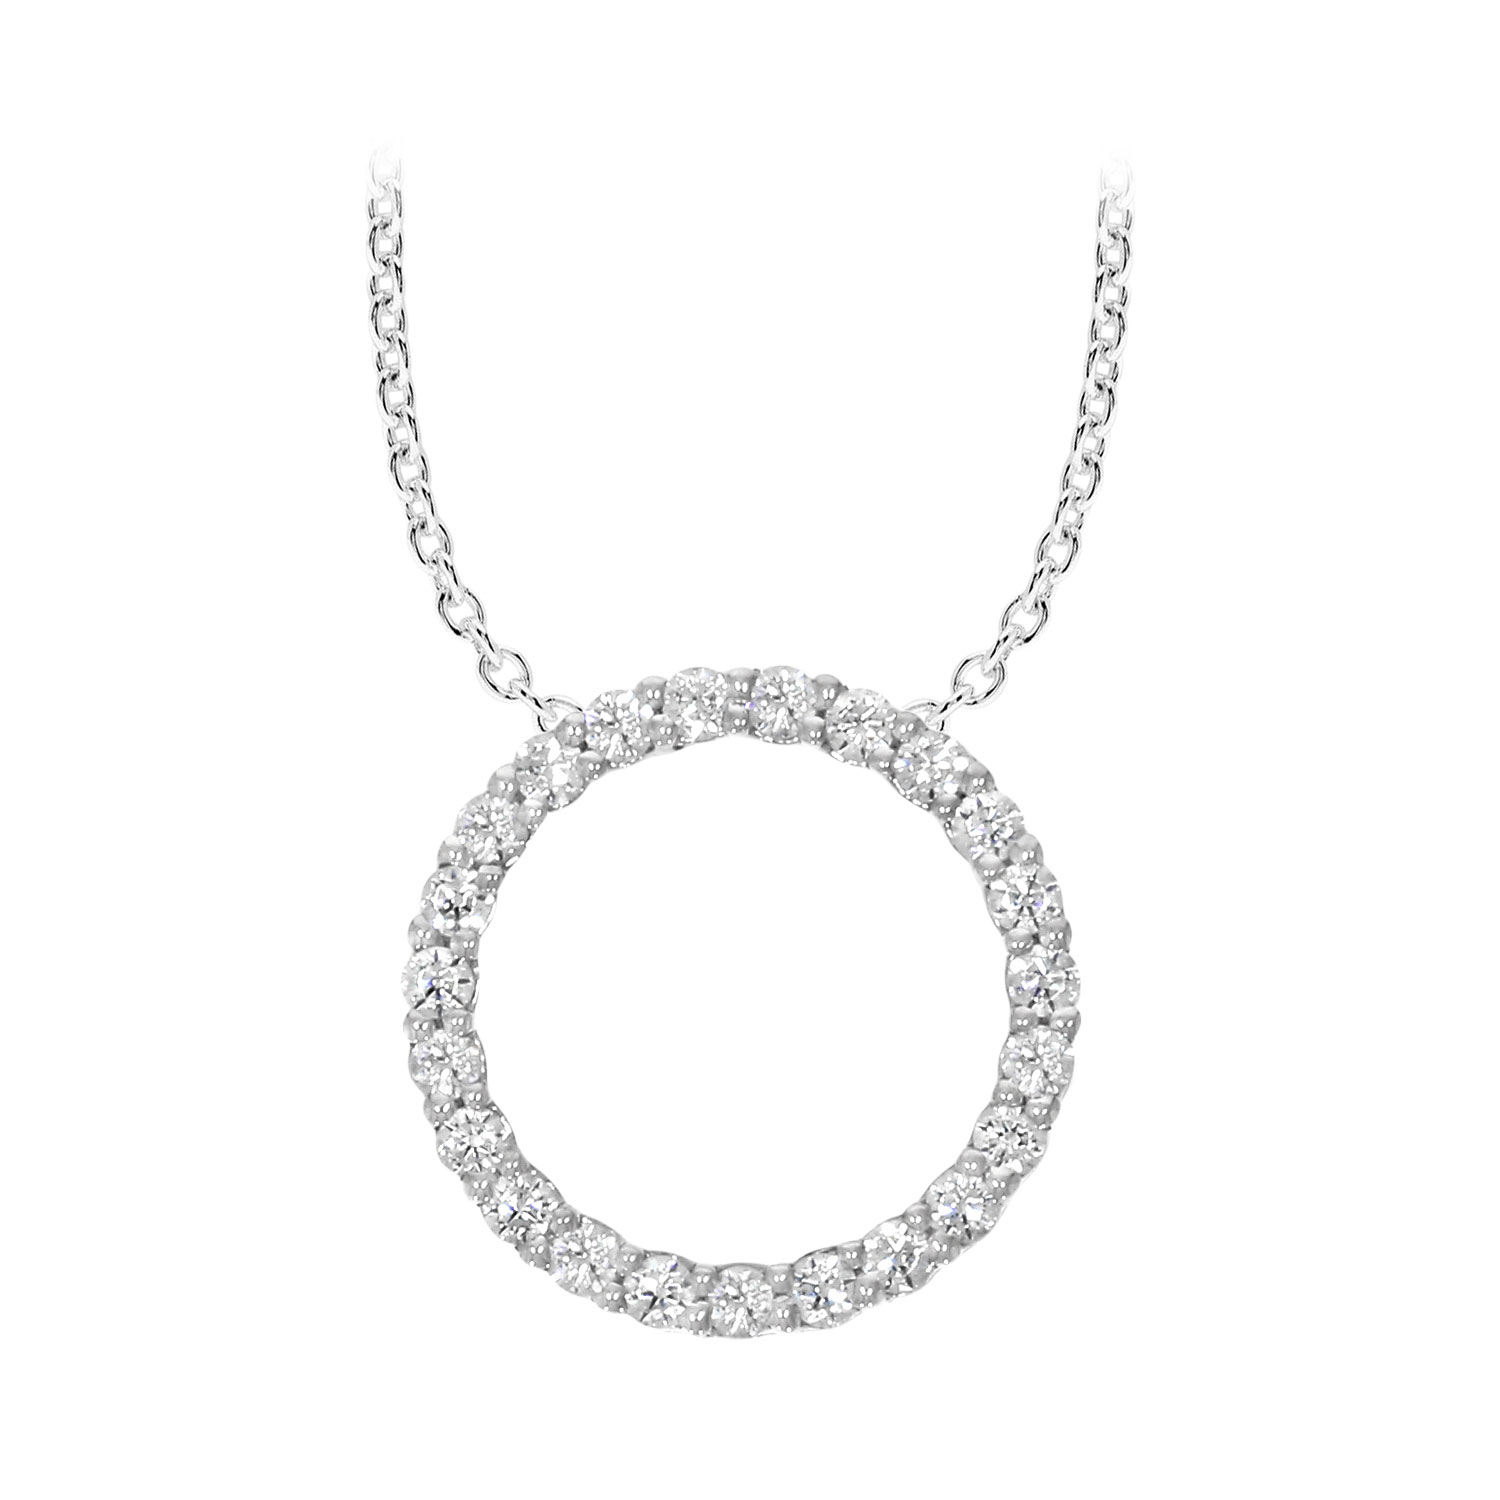 Value Priced Diamond Jewelry